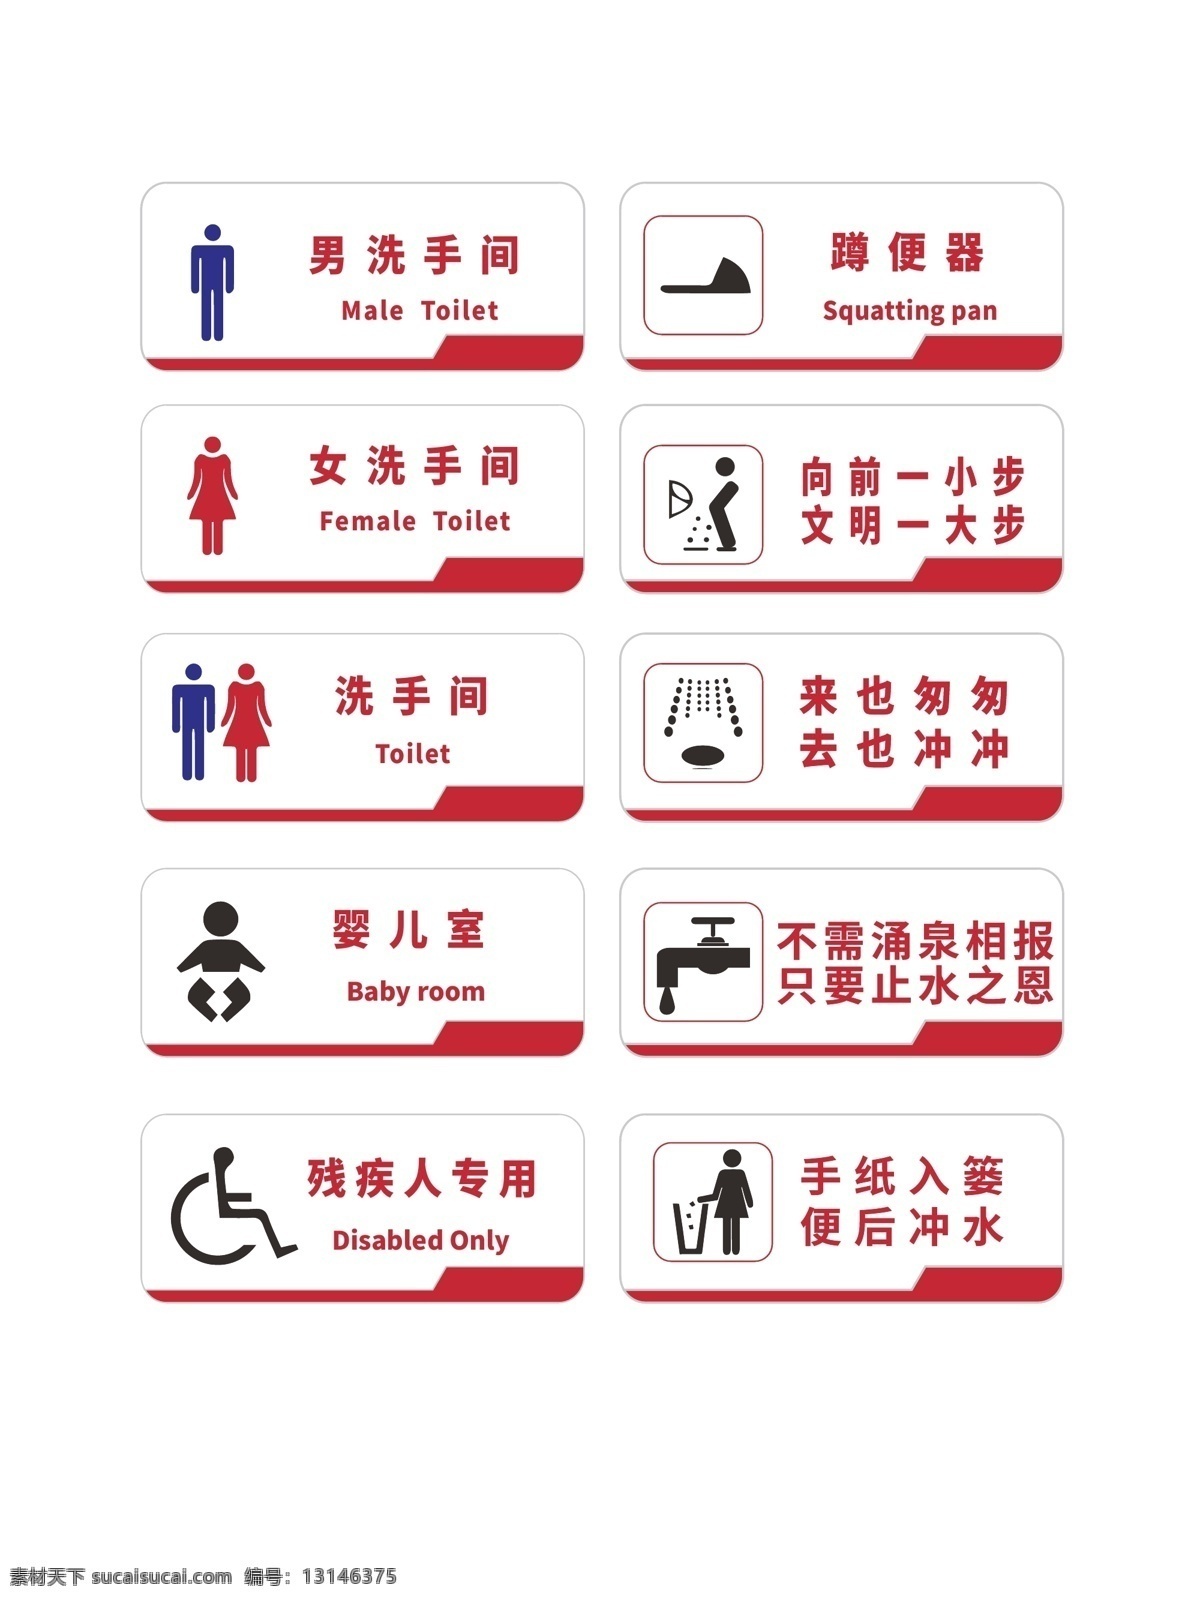 公共场所 vi vi设计 残疾人专用 导视 蹲便器 公共厕所 男洗手间 女洗手间